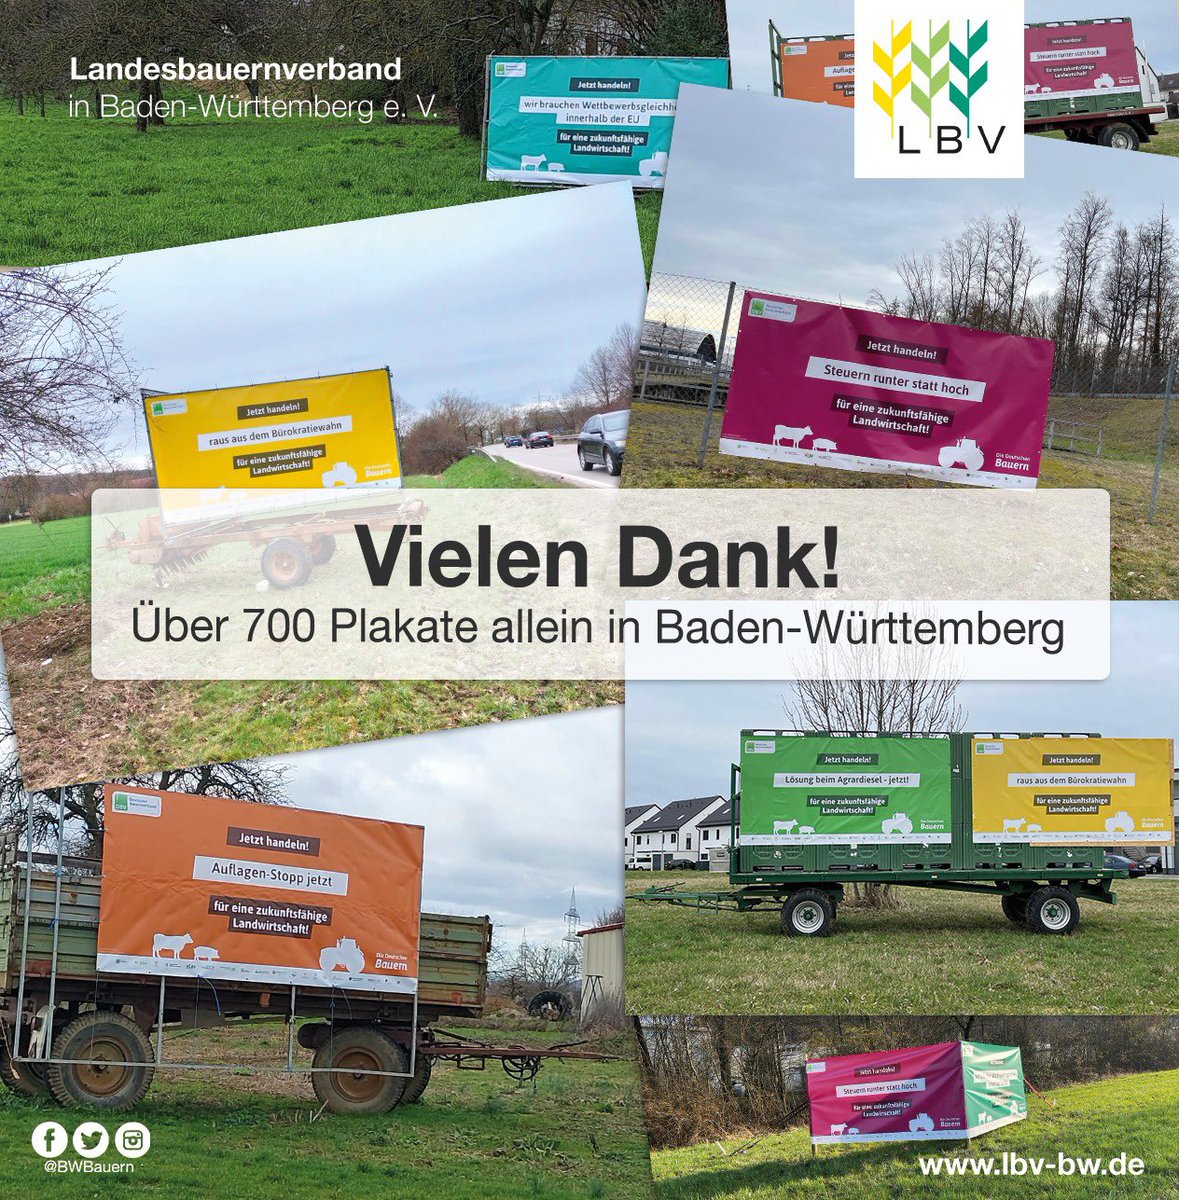 Plakatkampagne der Bauernverbände | In Baden-Württemberg konnten wir dank des Engagements unserer Mitglieder über 700 Plakate allein in unserem Verbandsgebiet aufhängen 💪 Damit zählt der LBV zweifelsohne zu den Verbänden mit den meisten Plakaten in der Fläche. Vielen Dank!